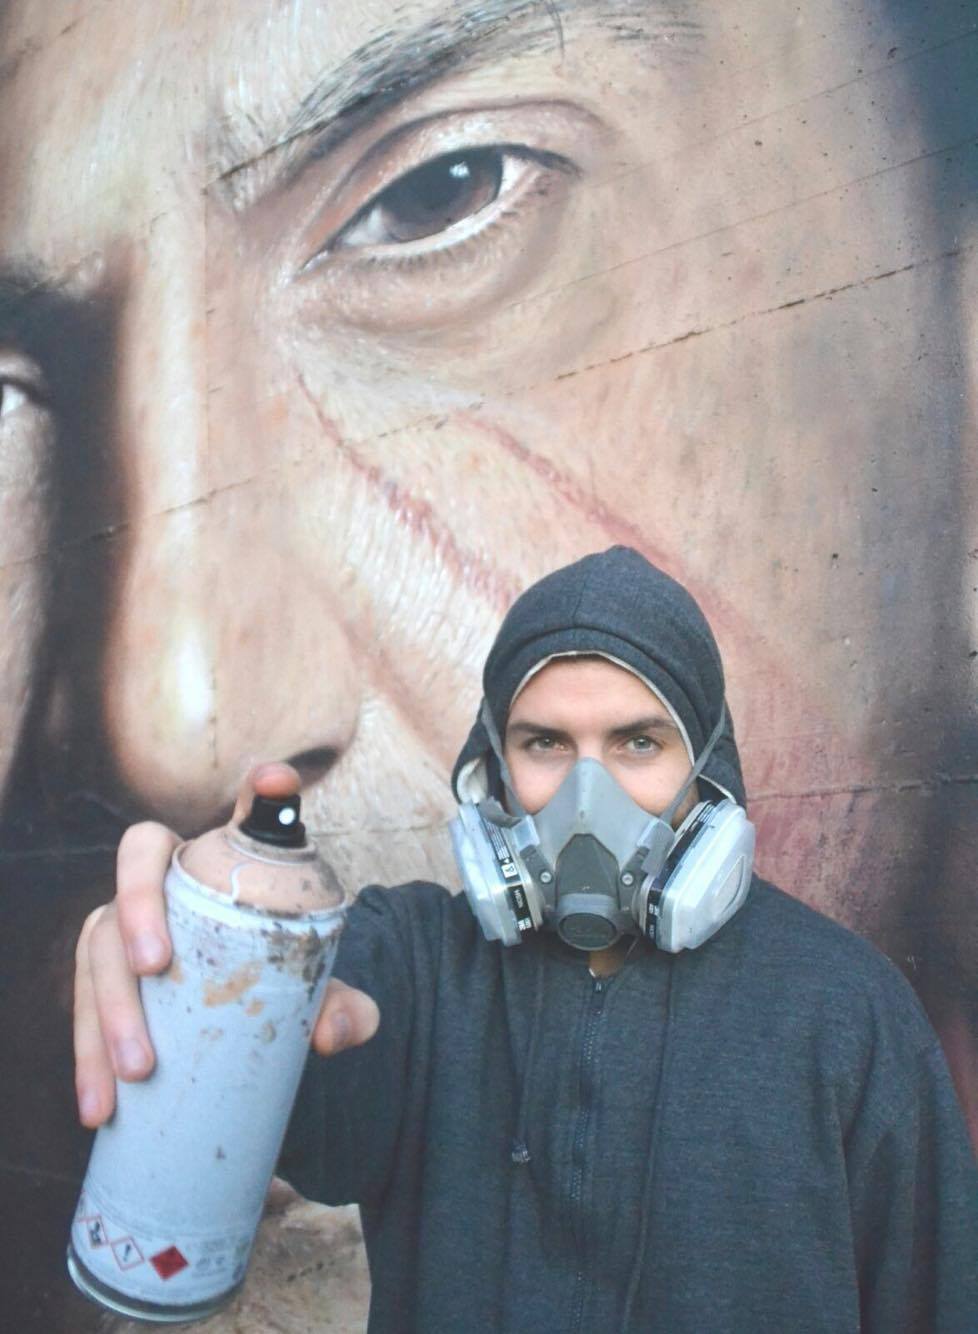 Buonalbergo| Tutto pronto per “operazione Jorit” il trionfo della street art dalle periferie ai borghi